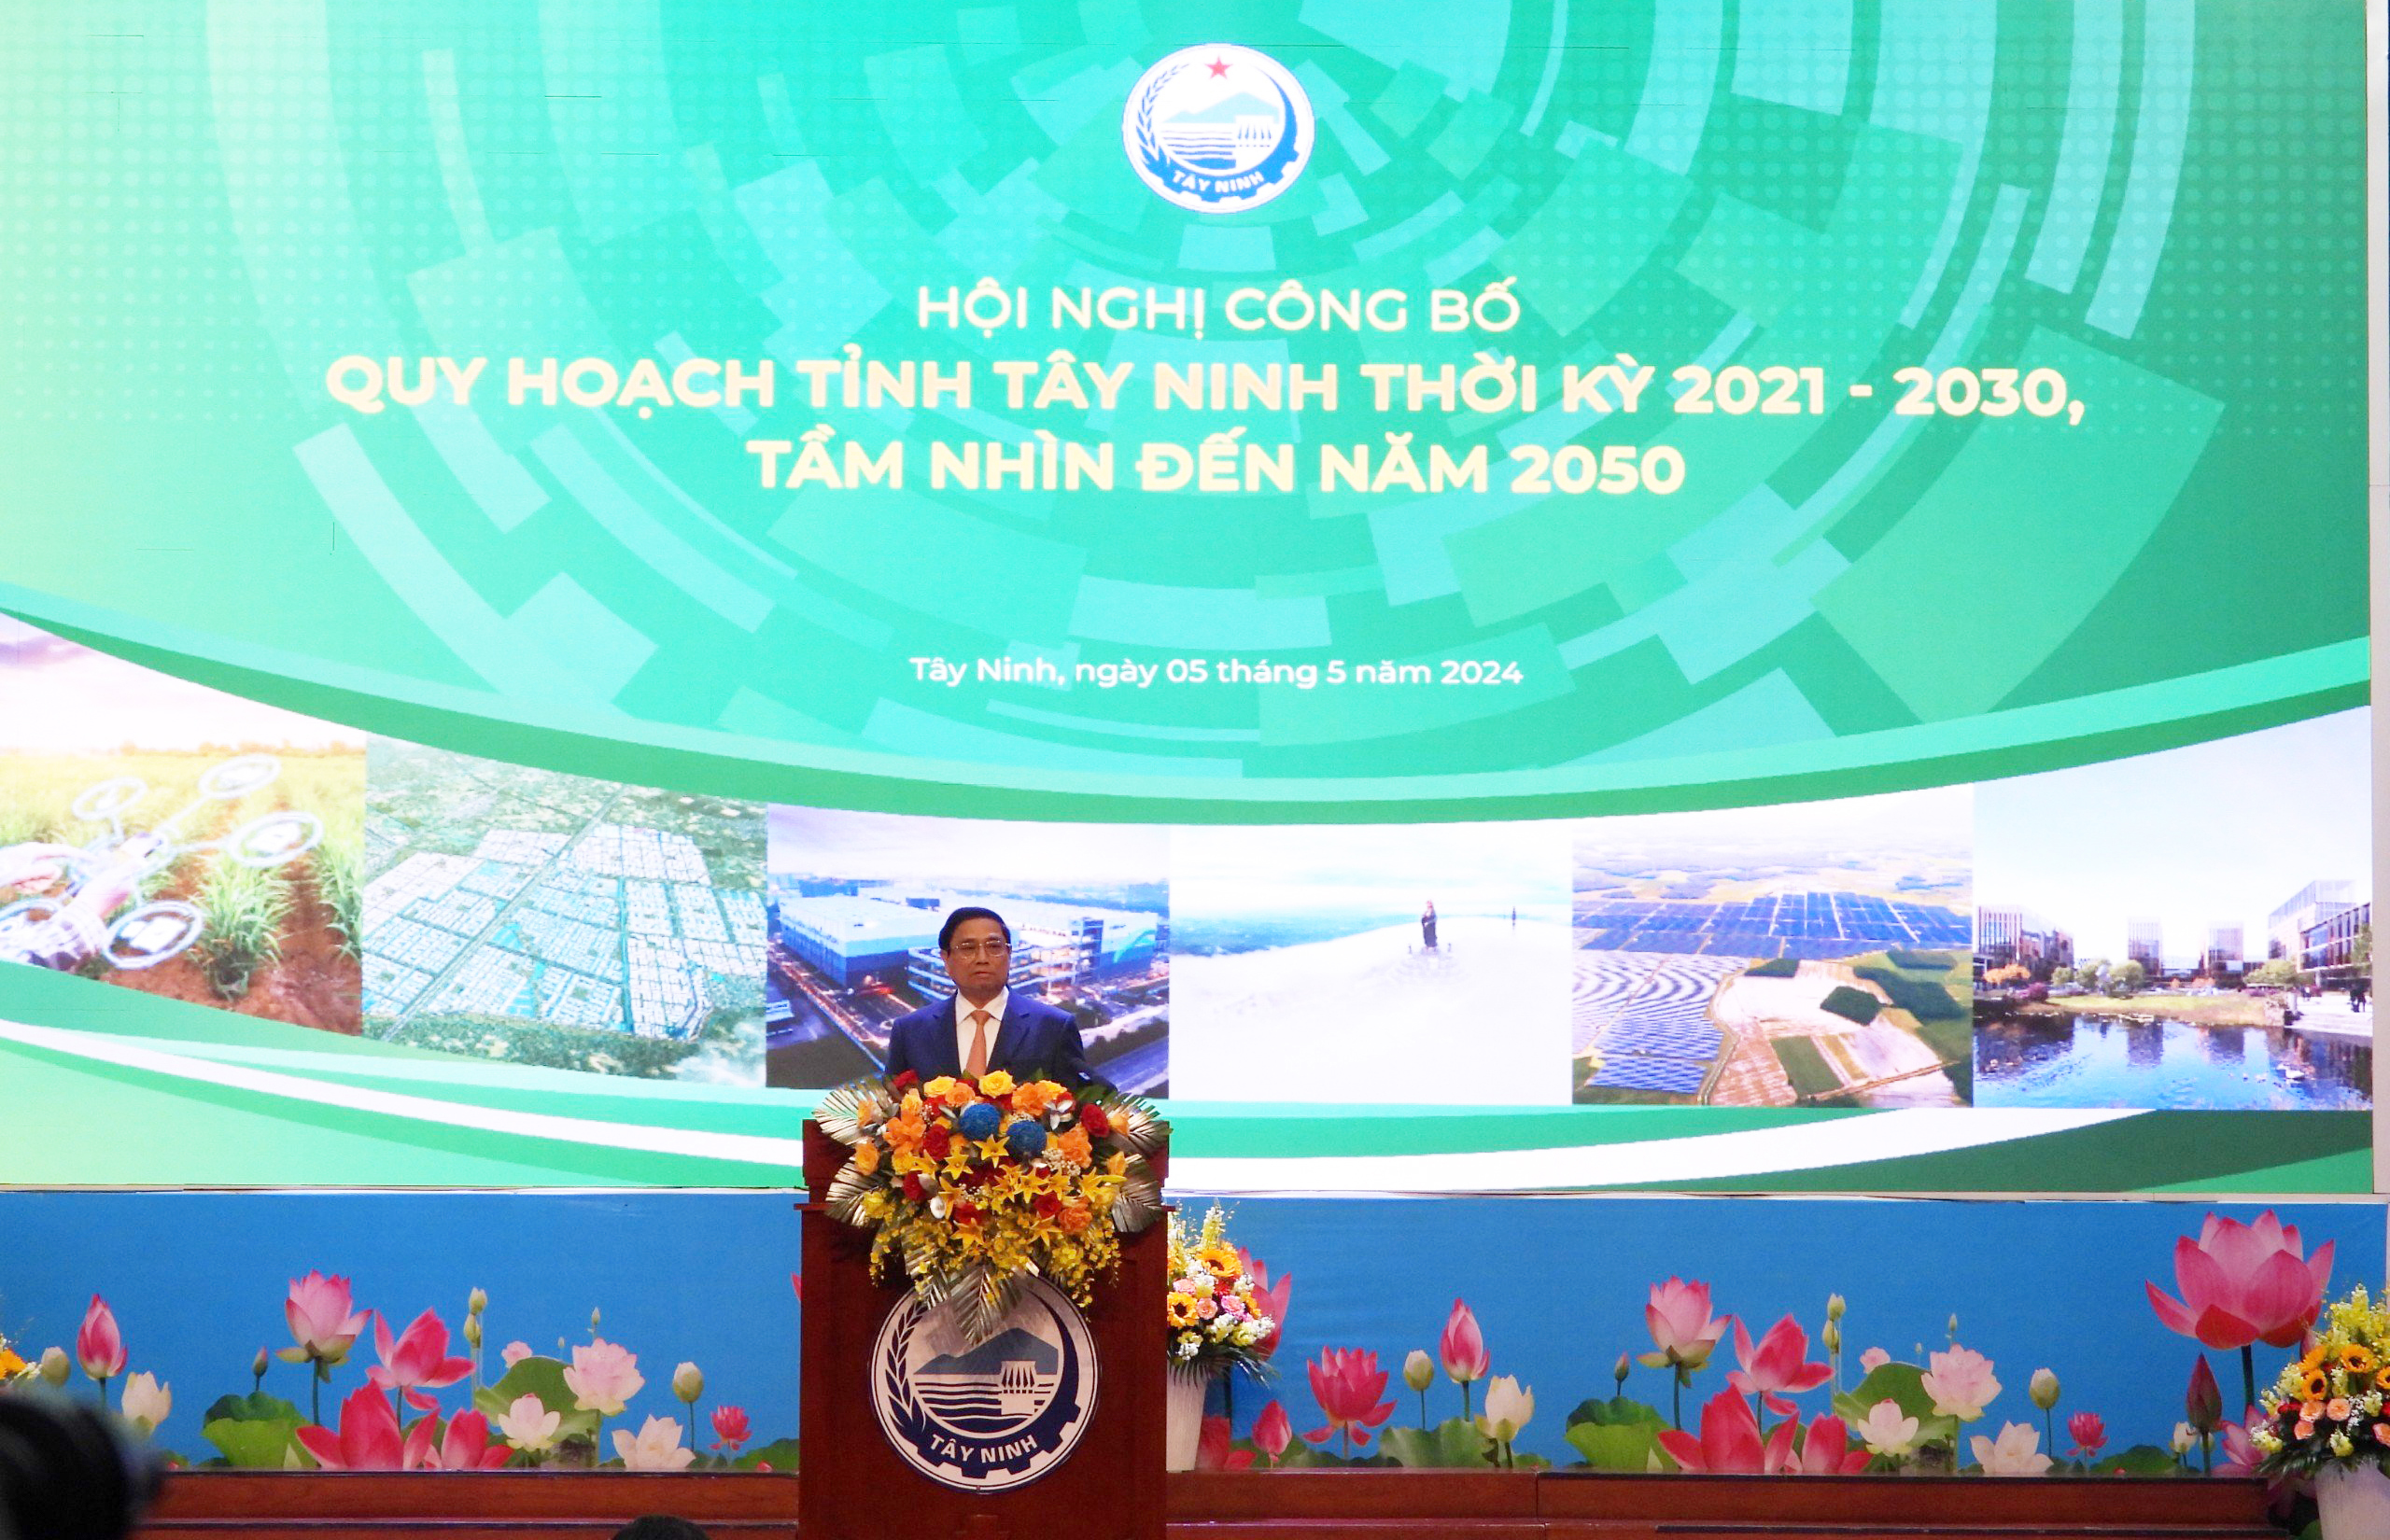 Thủ tướng Phạm Minh Chính phát biểu chỉ đạo tại Hội nghị công bố Quy hoạch tỉnh Tây Ninh.